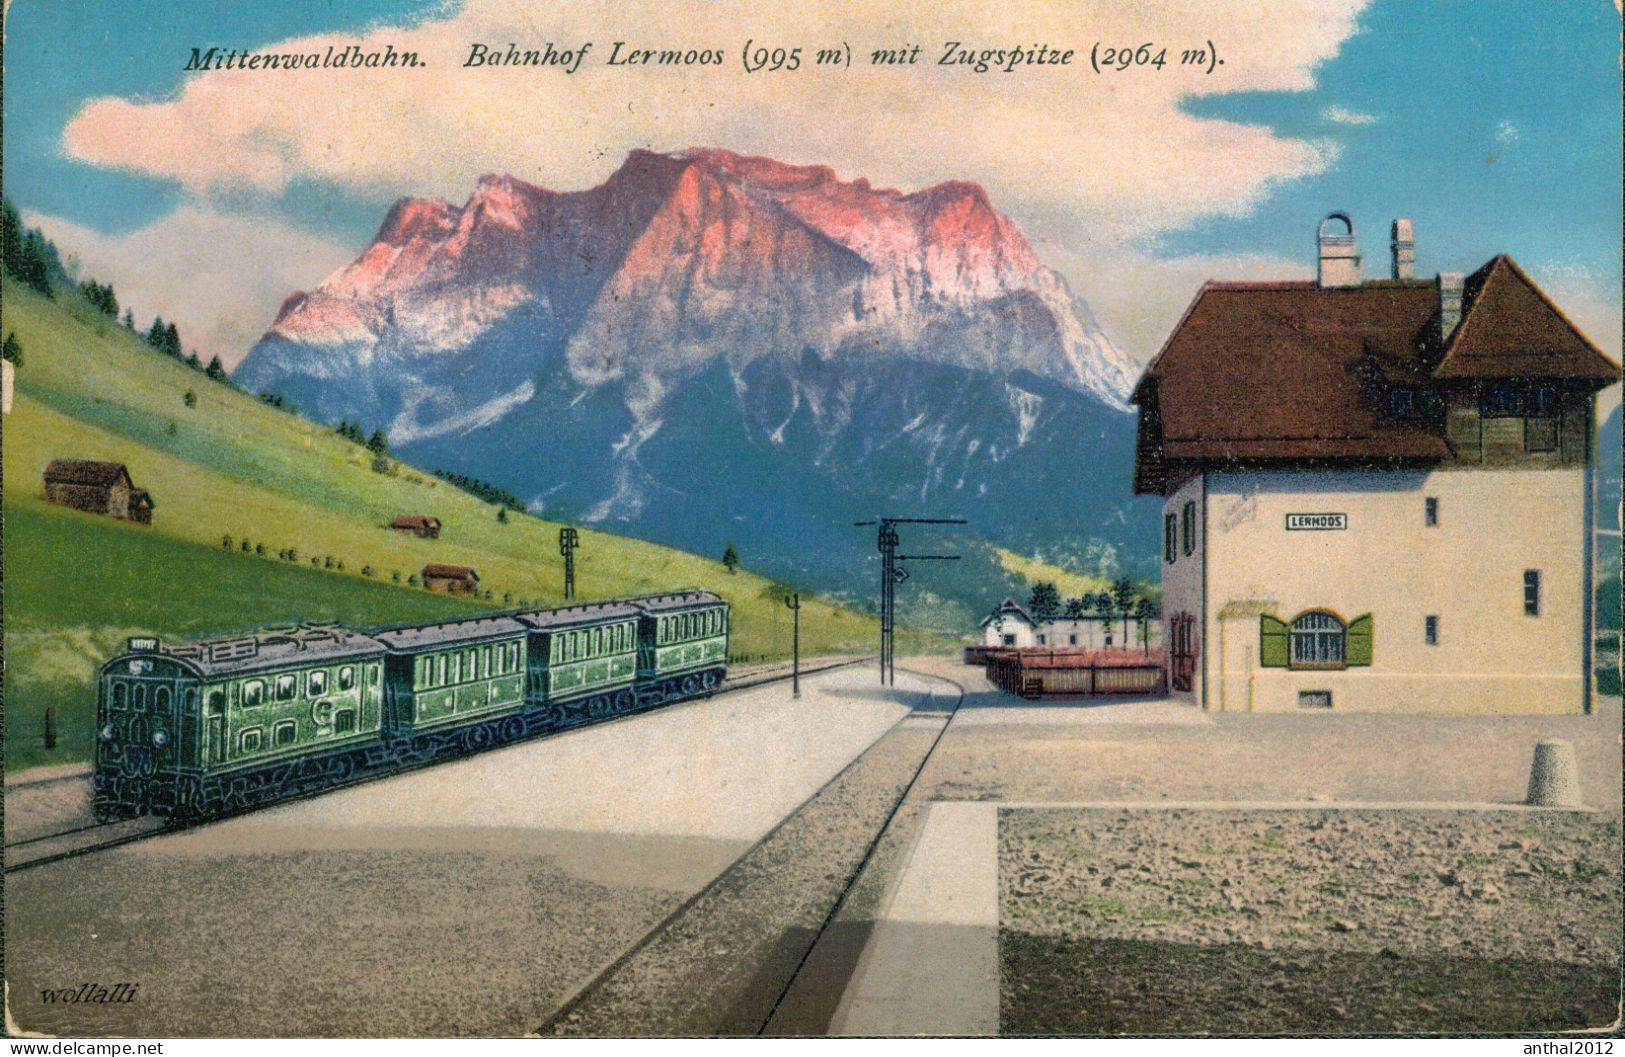 Superrar Bahnhof La Gare Lermoos Österreich Tirol Mit Zug 24.5.1921 Zugspitze - Bahnhöfe Mit Zügen